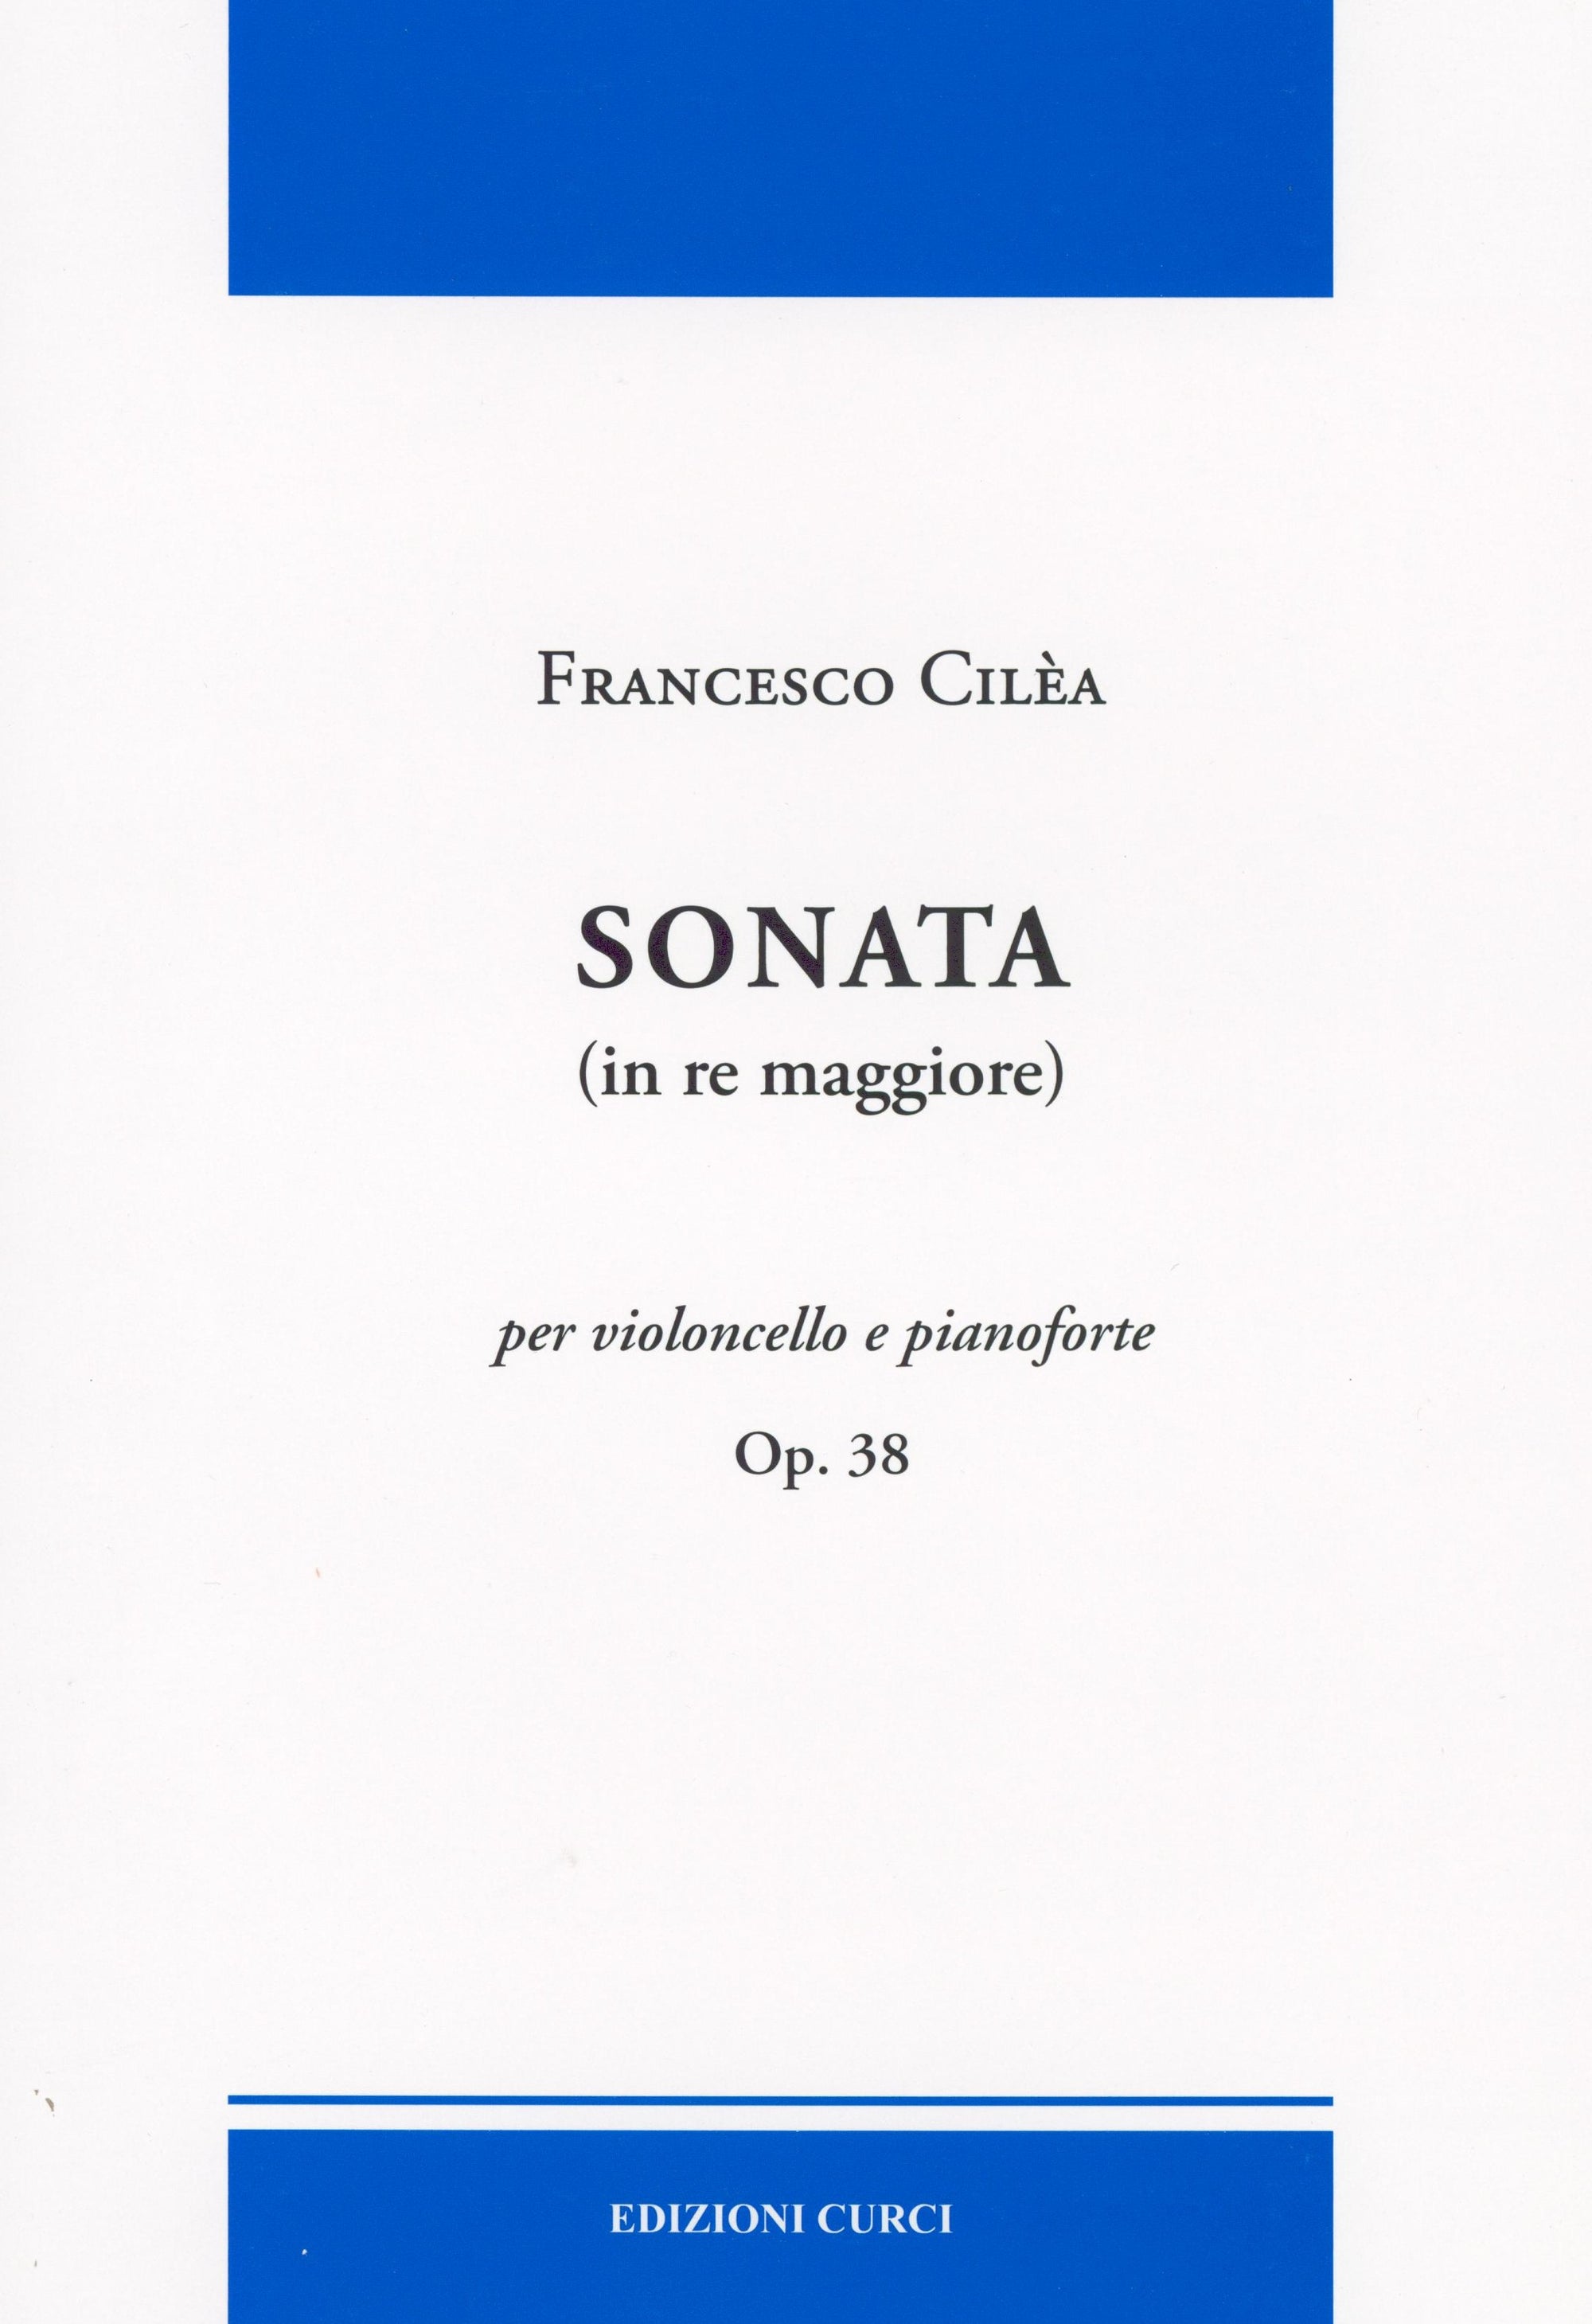 Cilea: Cello Sonata in D Major, Op. 38